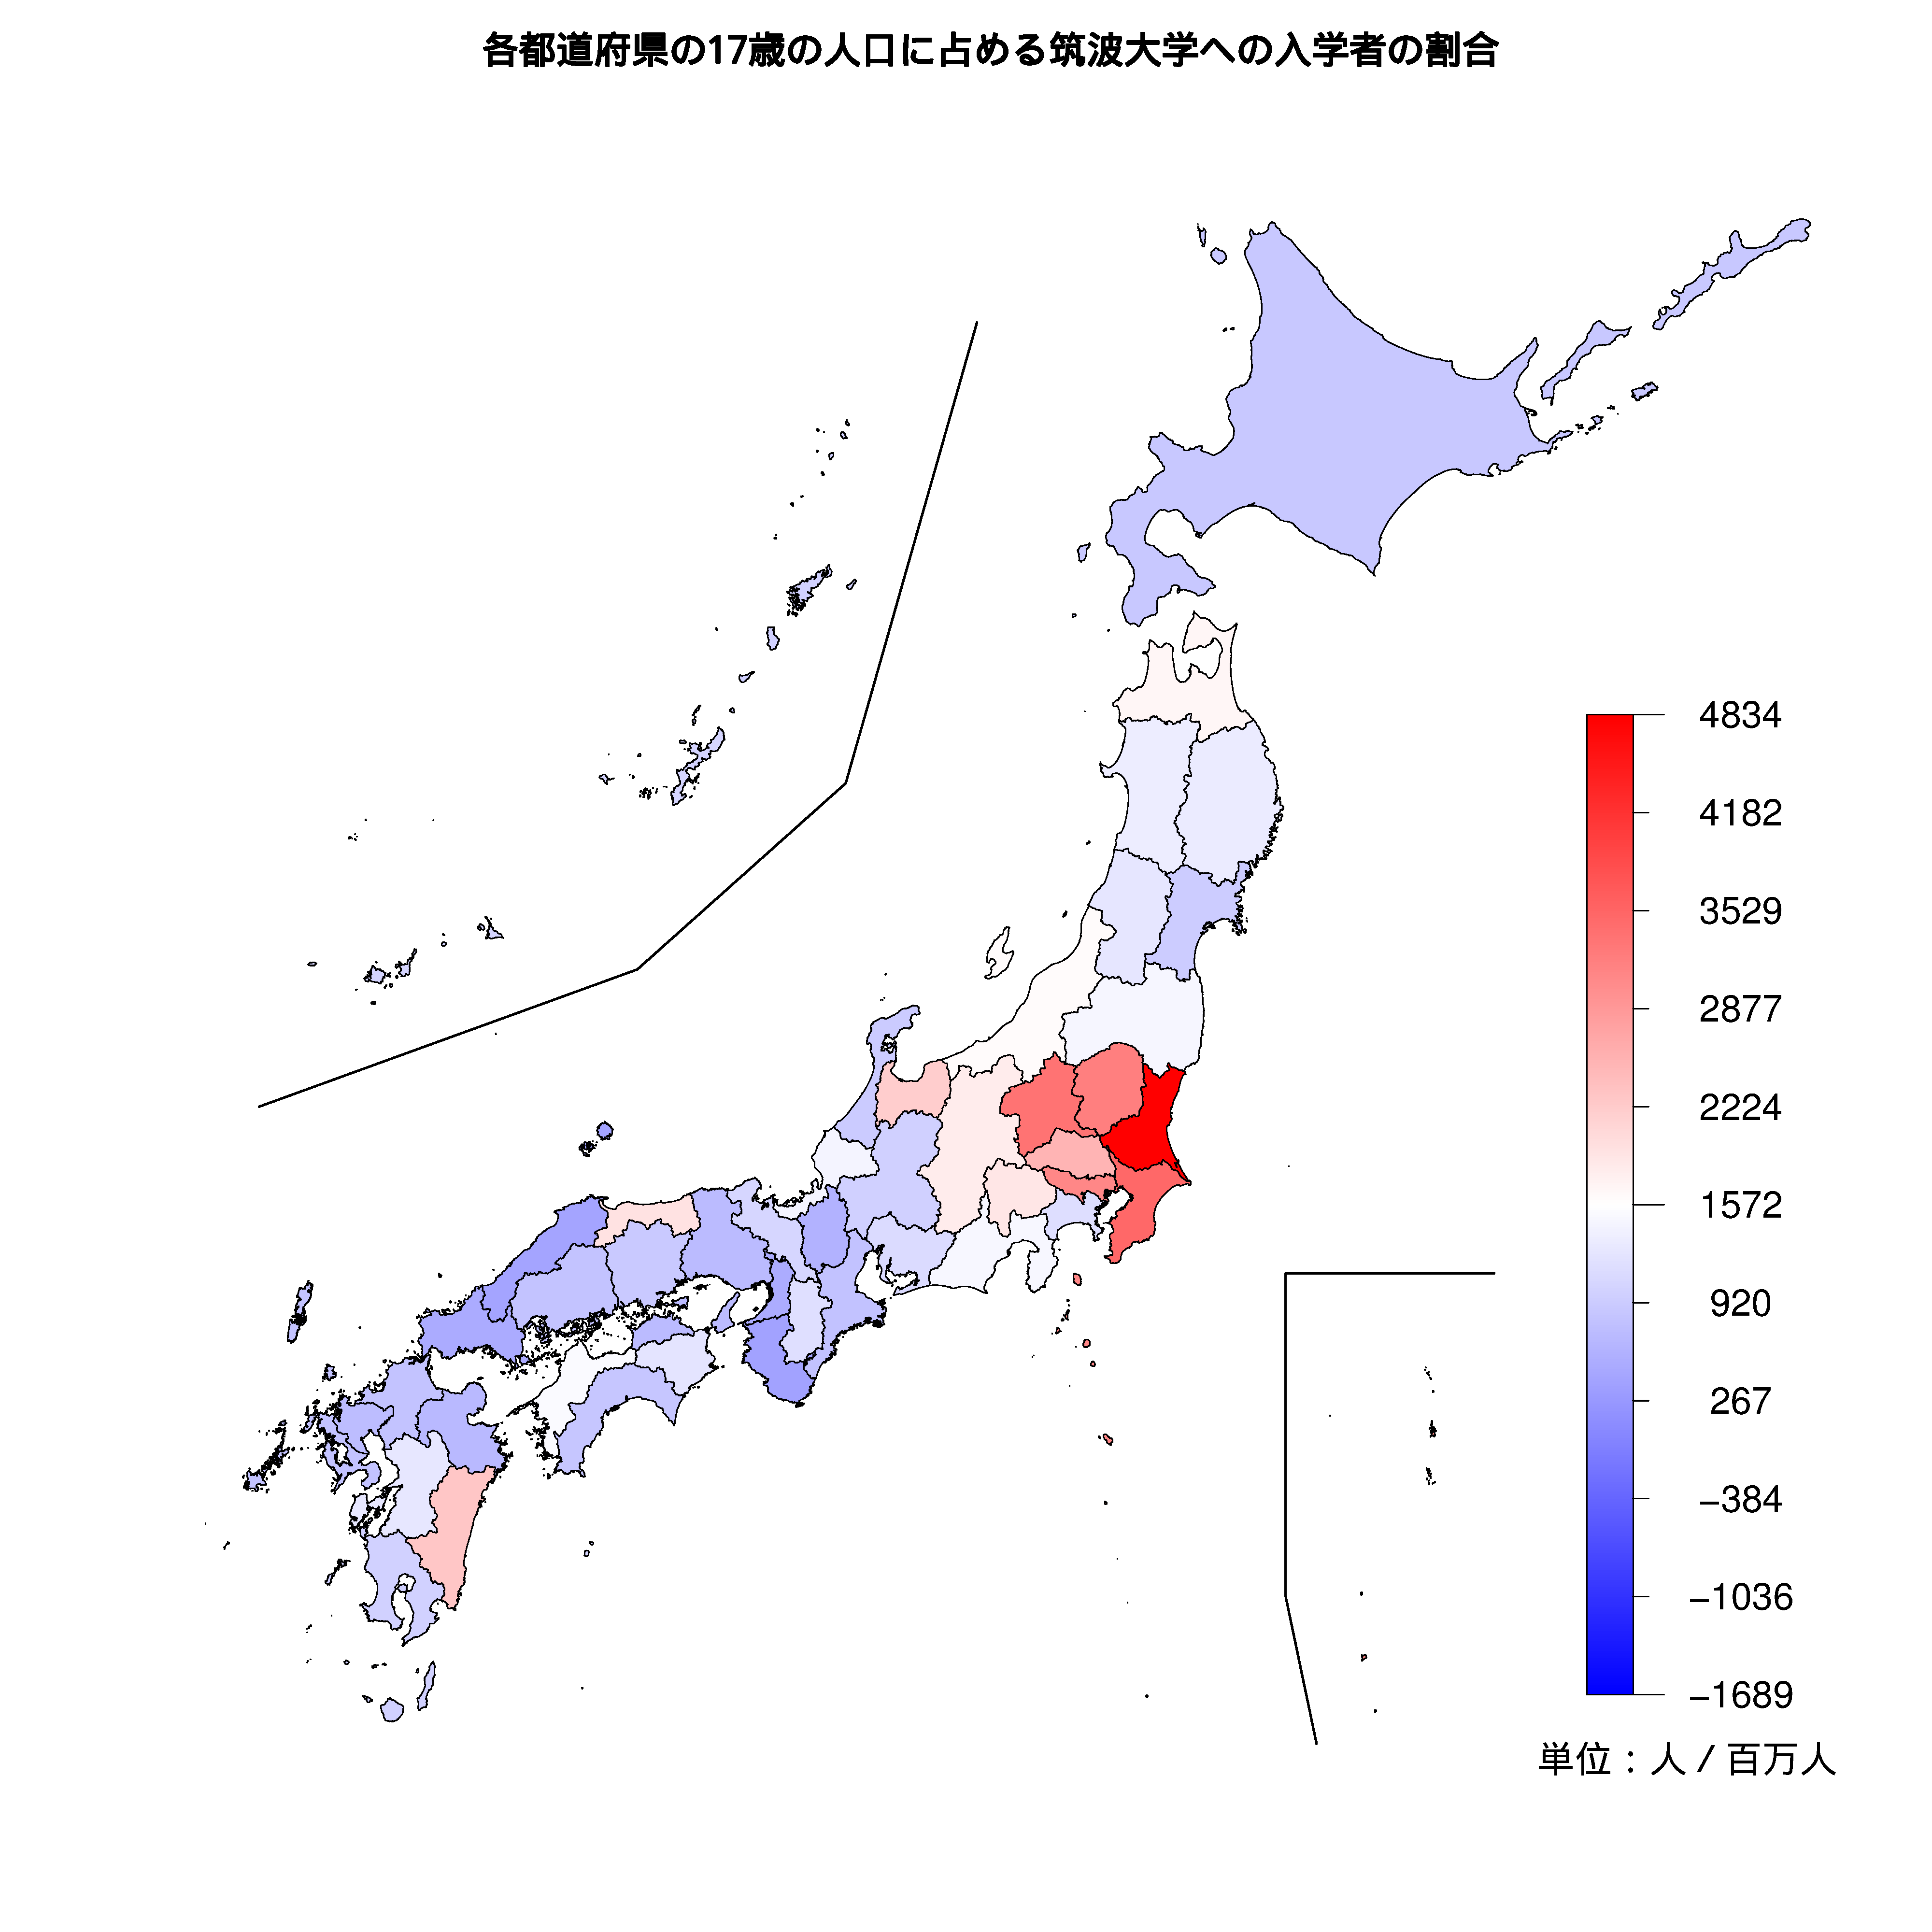 筑波大学への入学者が多い都道府県の色分け地図